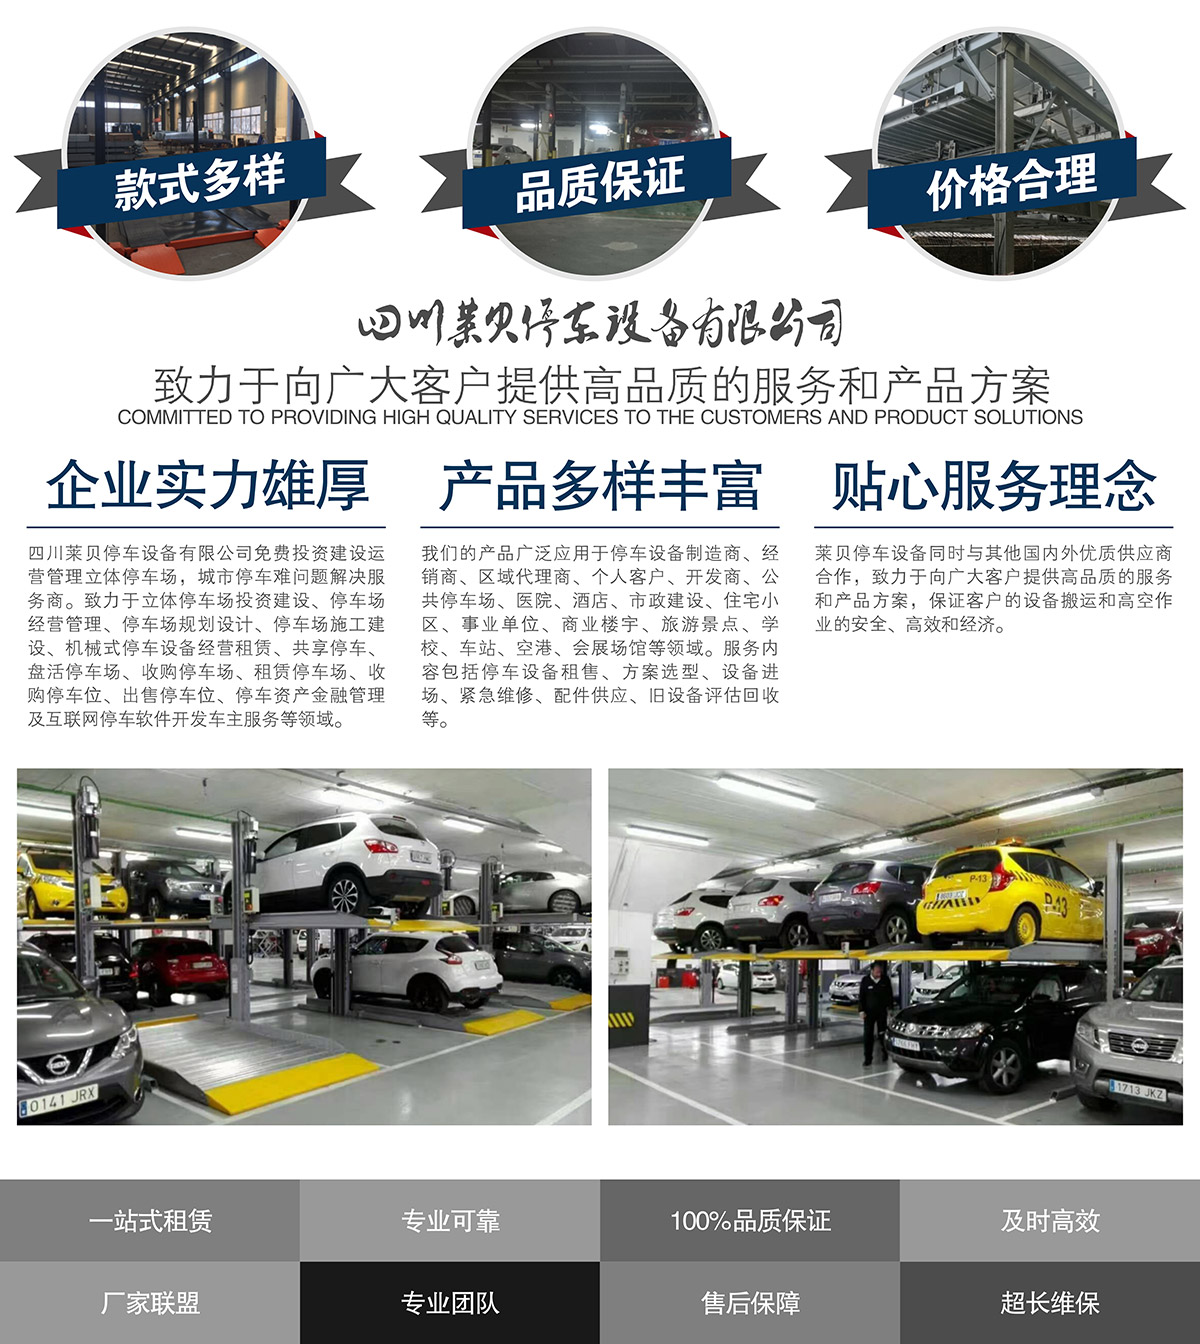 成都莱贝机械车库投资经营提供高品质的服务和产品方案.jpg